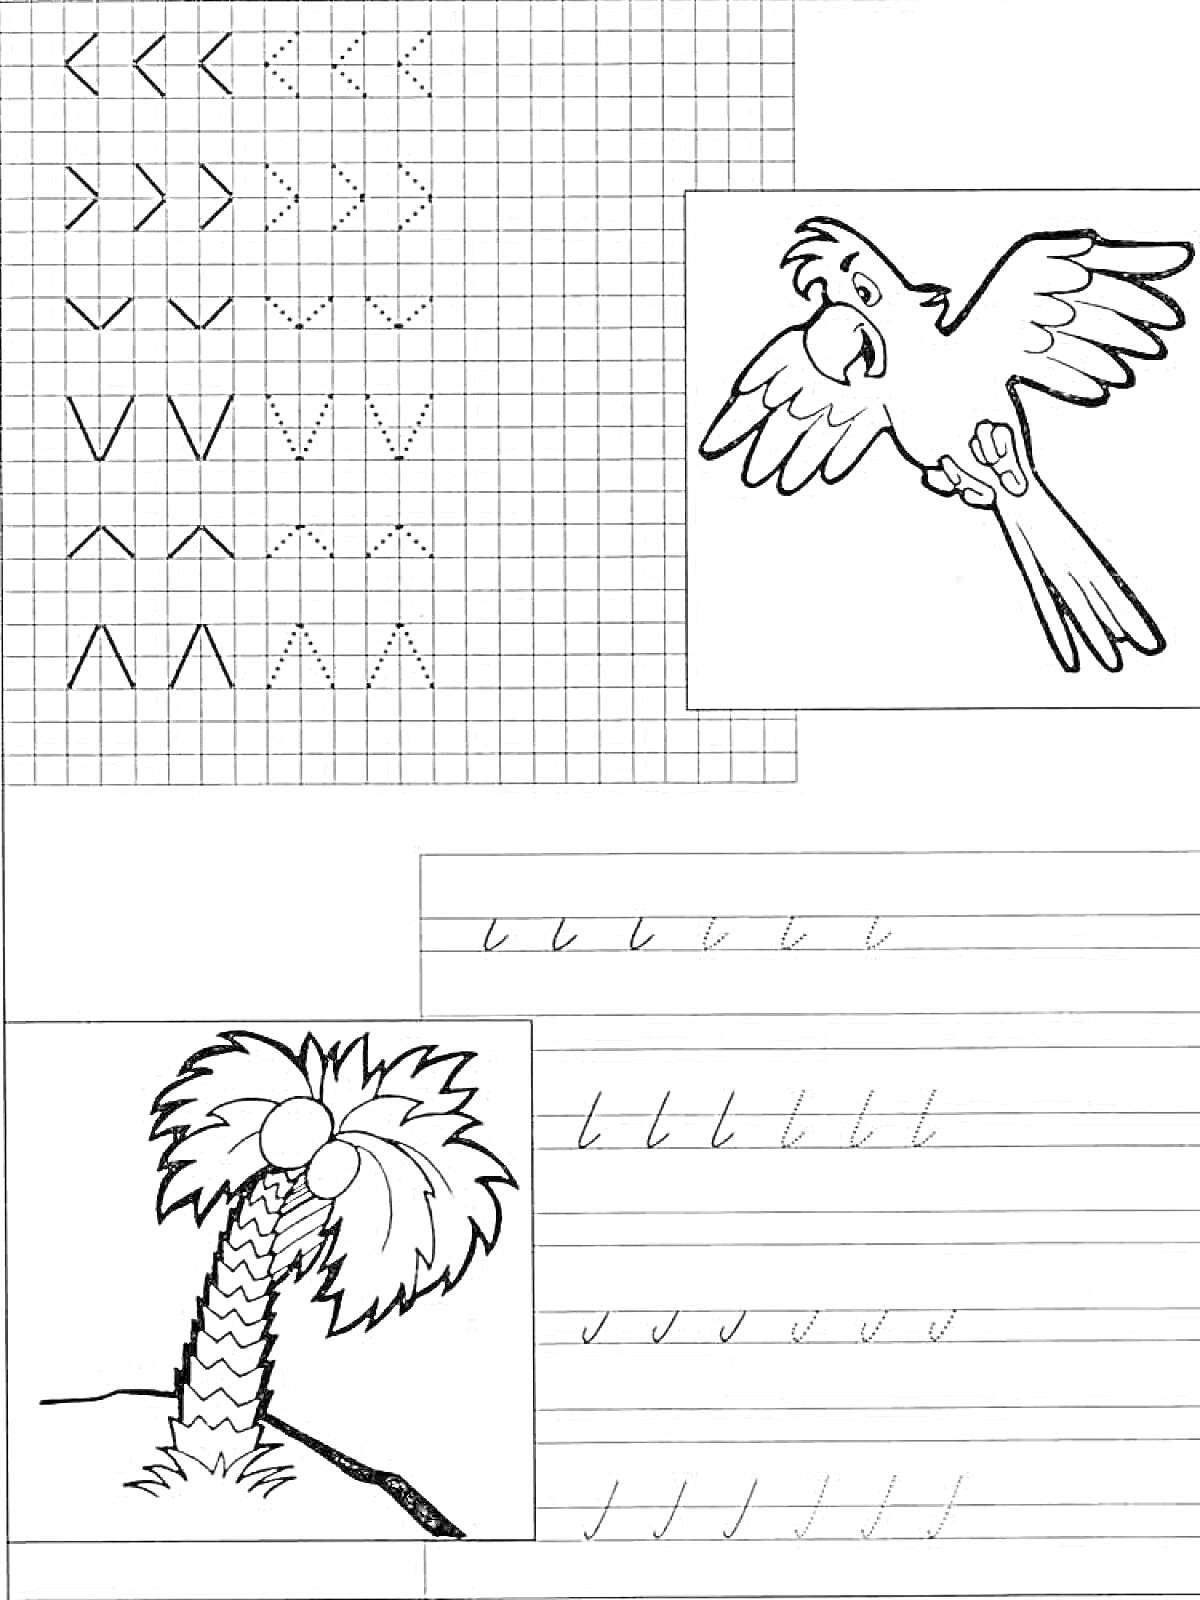 Раскраска Прописи по клеточкам и строкам с рисунками попугая и пальмы